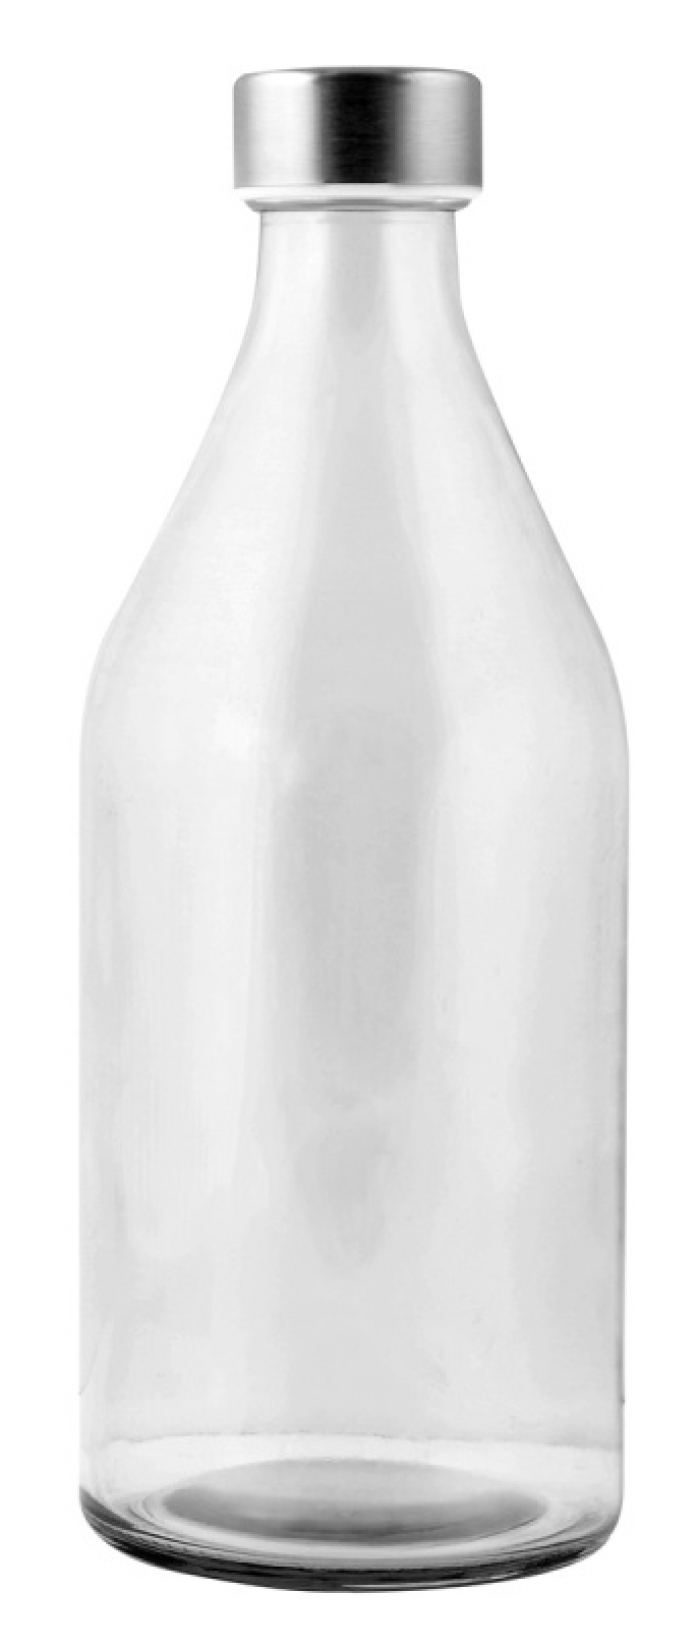 Bottiglie in vetro da 1 litro - Bluebag articoli personalizzati